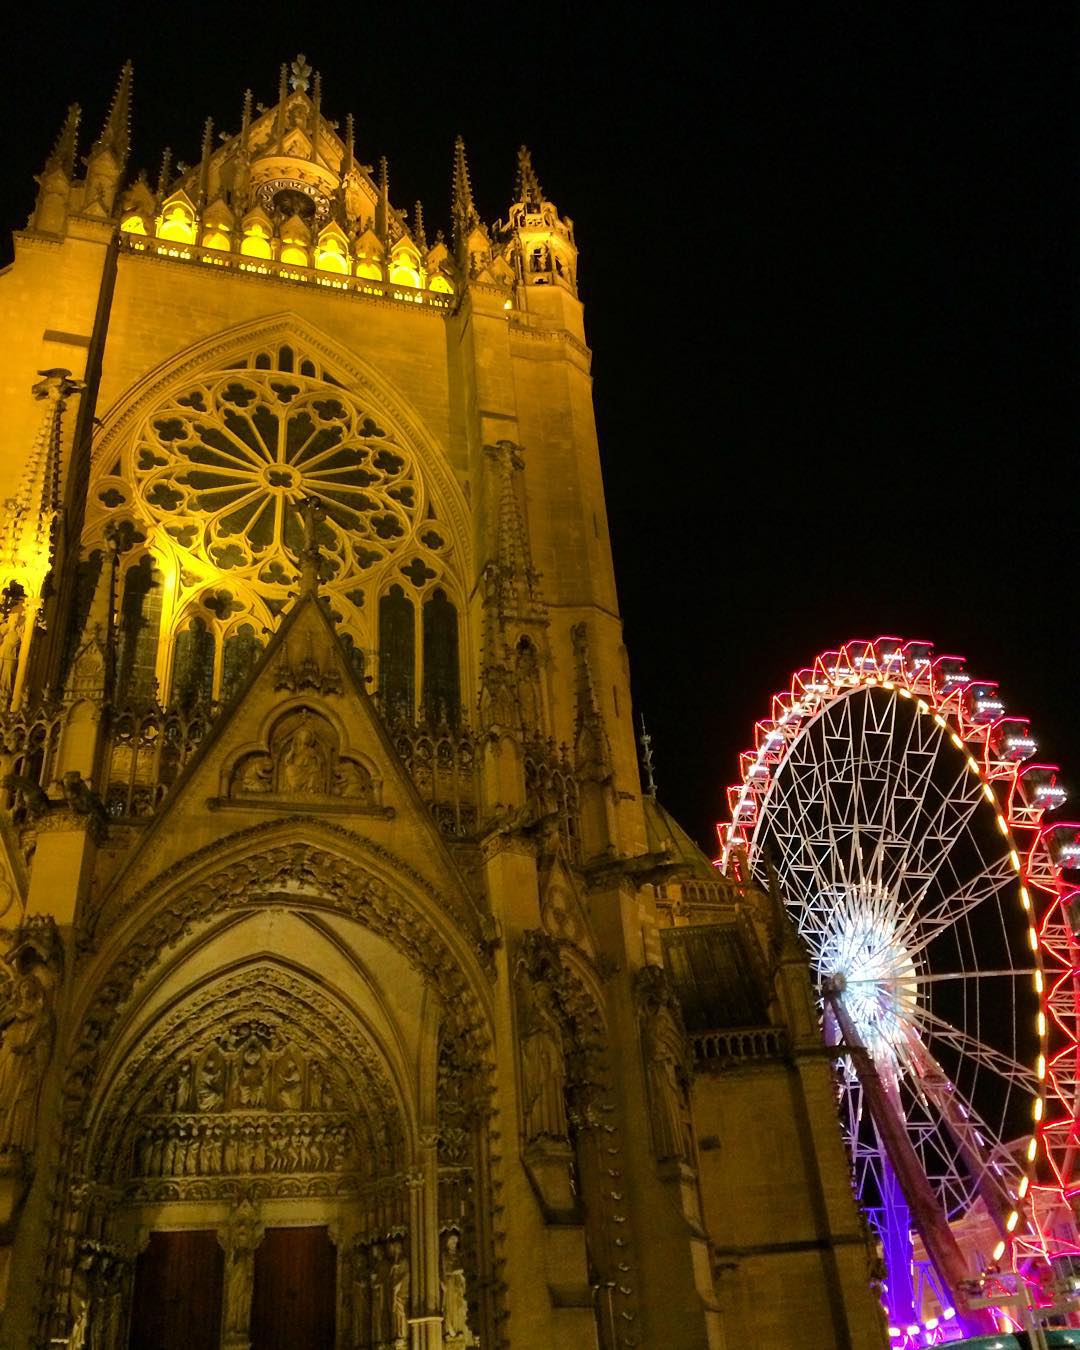 #travelgirl: Visite de la cathédrale de Metz avant le Réveillon de la nouvelle Année ! Pic by myself 📷 #Metz #granderoue #bigwheel #france #holidays #travel #traveladdict #cathedral #theglobewanderer